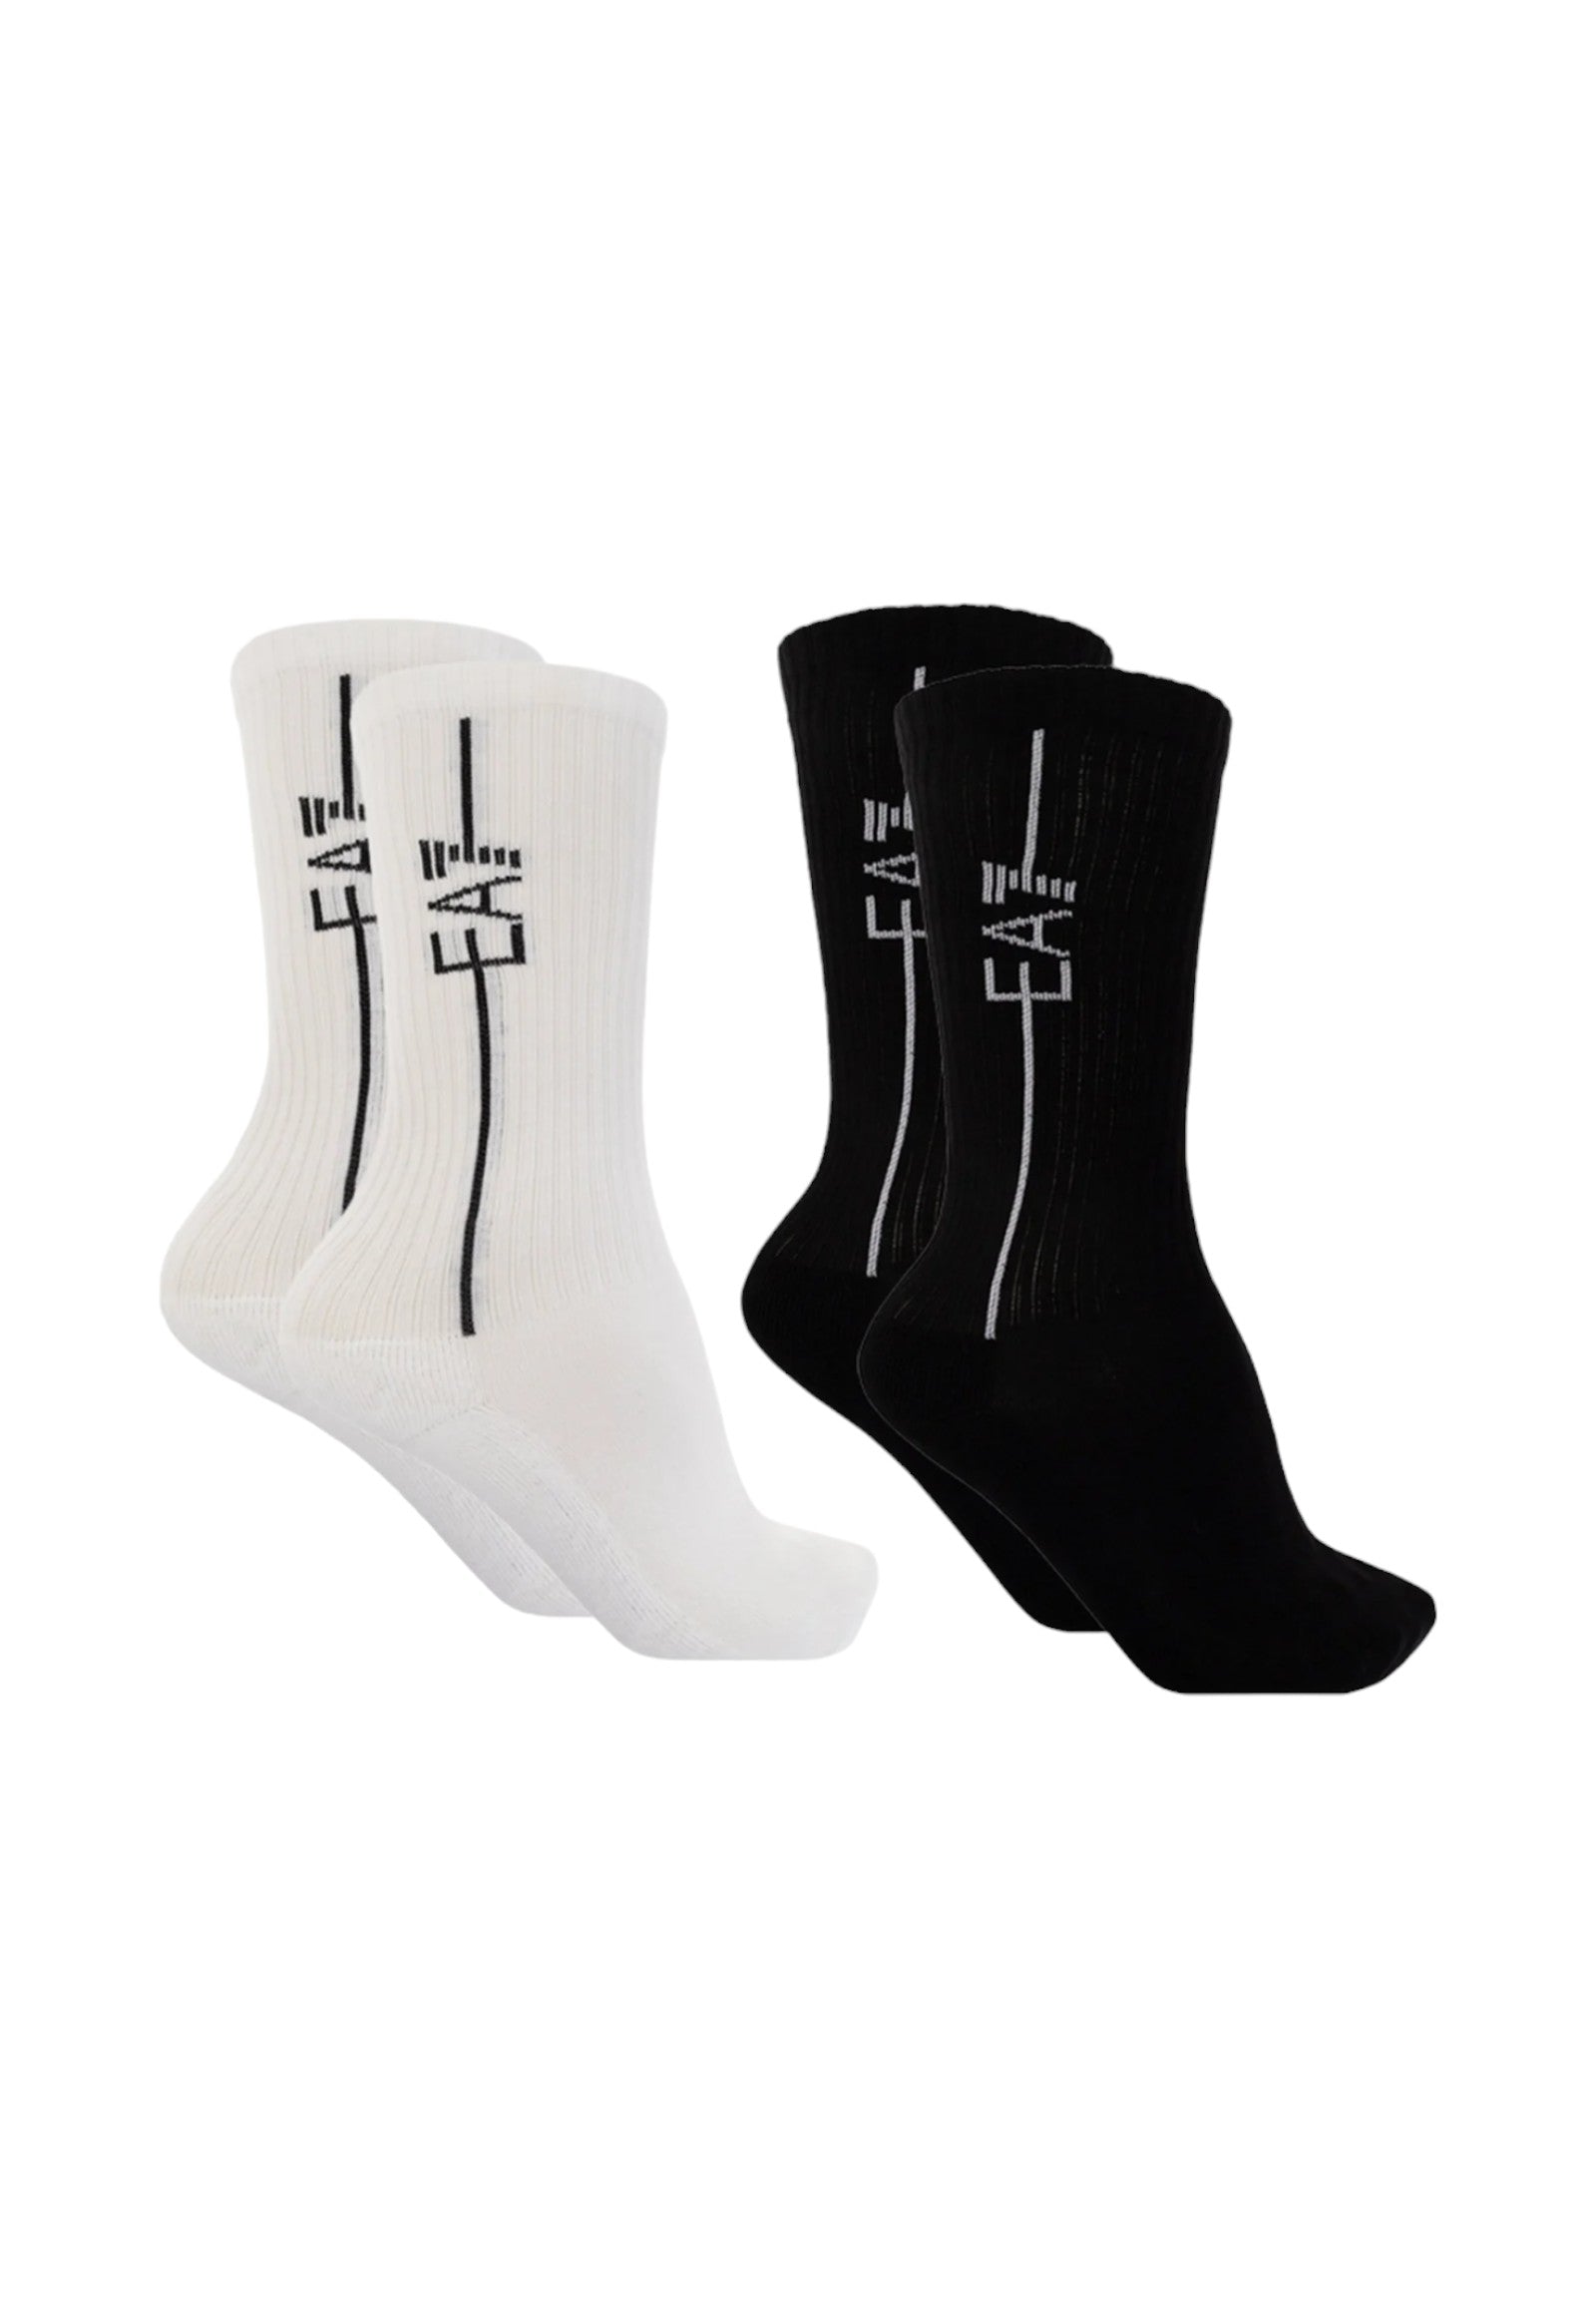 Socks 246002 Black, White